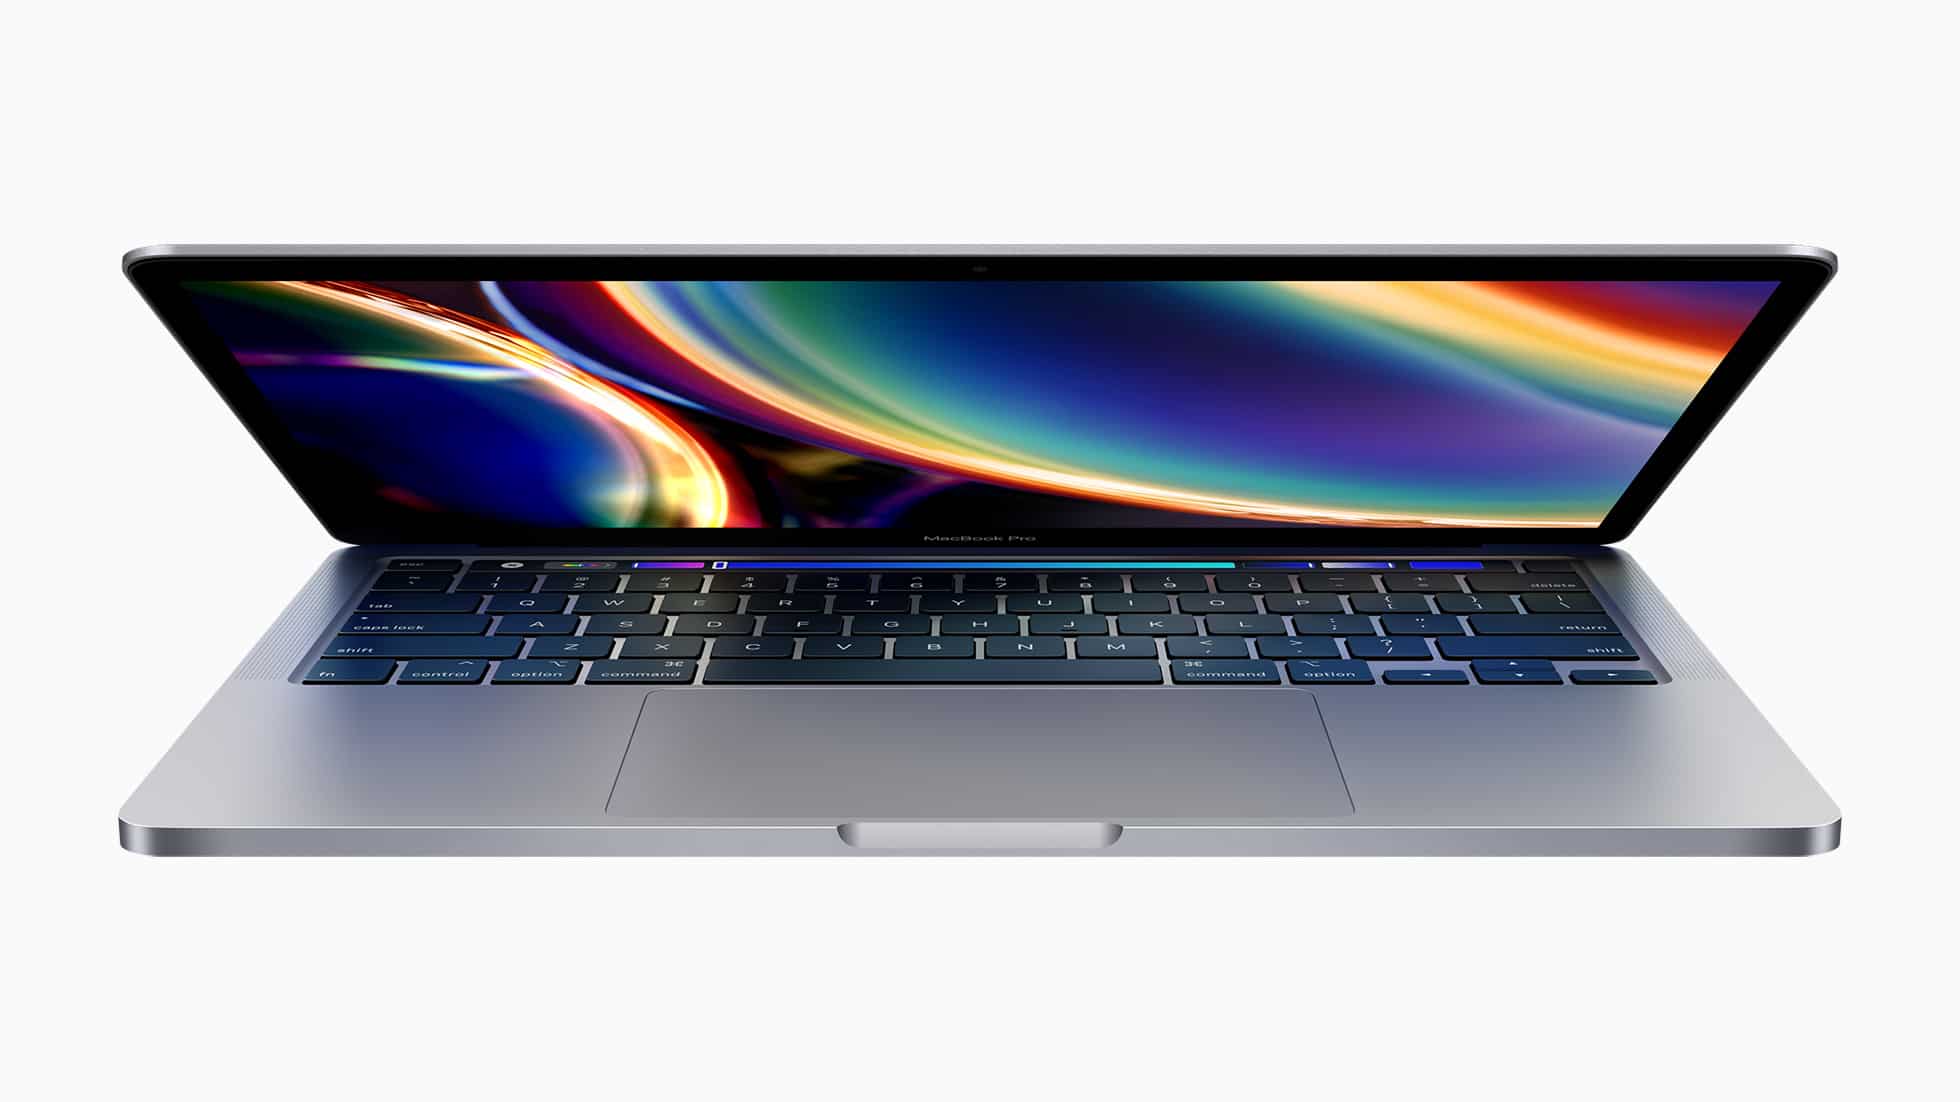 Neues 13-Zoll MacBook Pro mit Intel CPUs der 10. Generation, Magic Keyboard, 256 GB Basisspeicher angekündigt 54